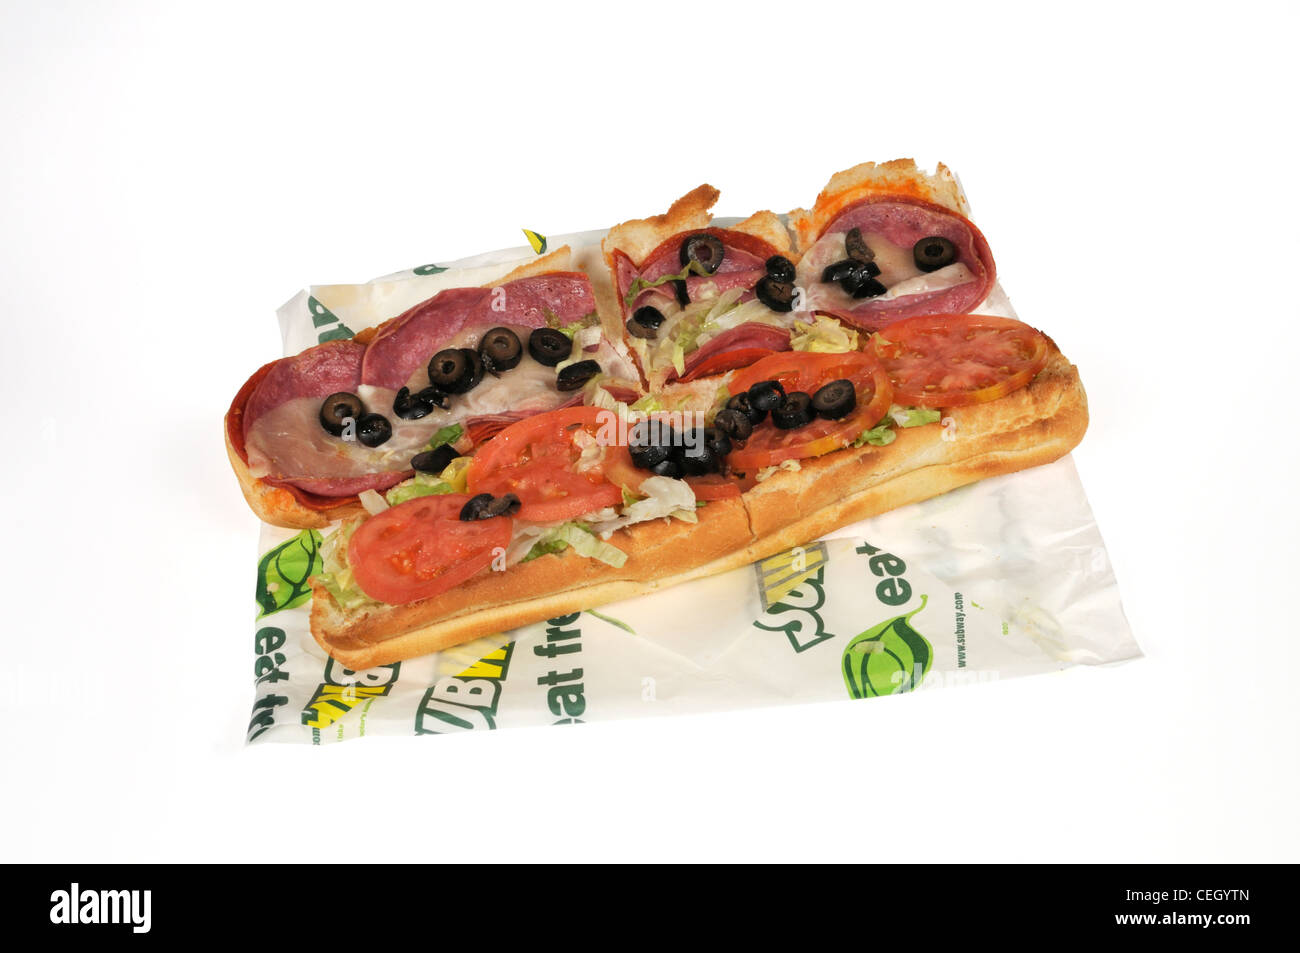 U-würzigen italienischen Wurstwaren footlong submarine Sandwich mit Salat, Tomaten schwarze Oliven auf Wrapper auf weißem Hintergrund Ausschnitt USA. Stockfoto